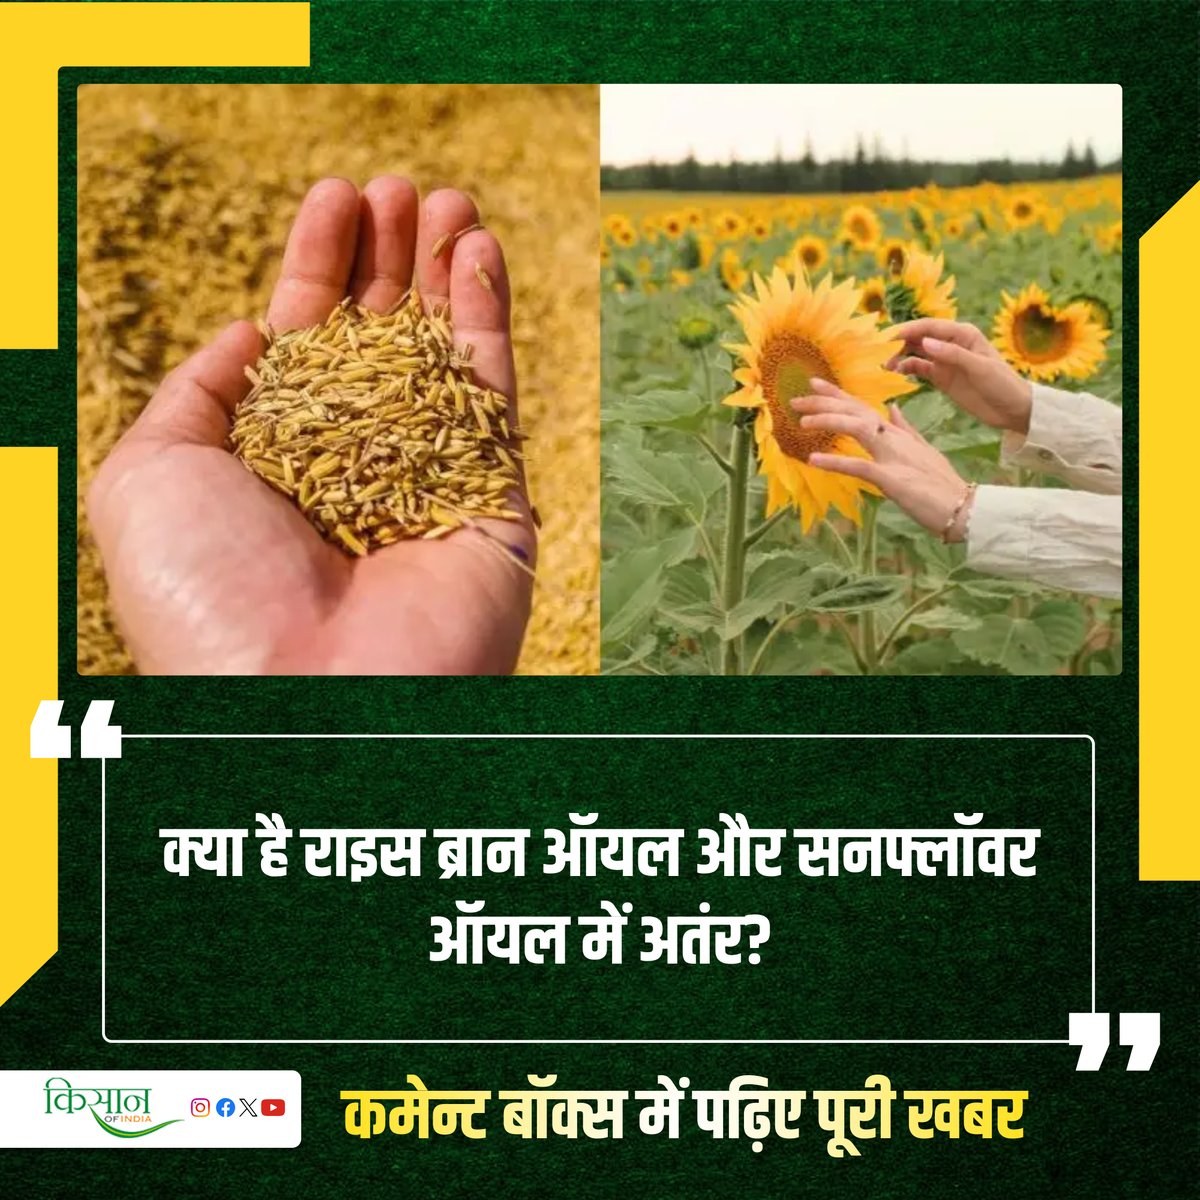 भारत में लगभग 25 लाख टन सूरजमुखी तेल का होता है आयात जानिए किस देश से कितना होता है आयात?

#KisanOfIndia #Farming #Sunflower #Agriculture #RiceOil #SunflowersOil #EdibleOil